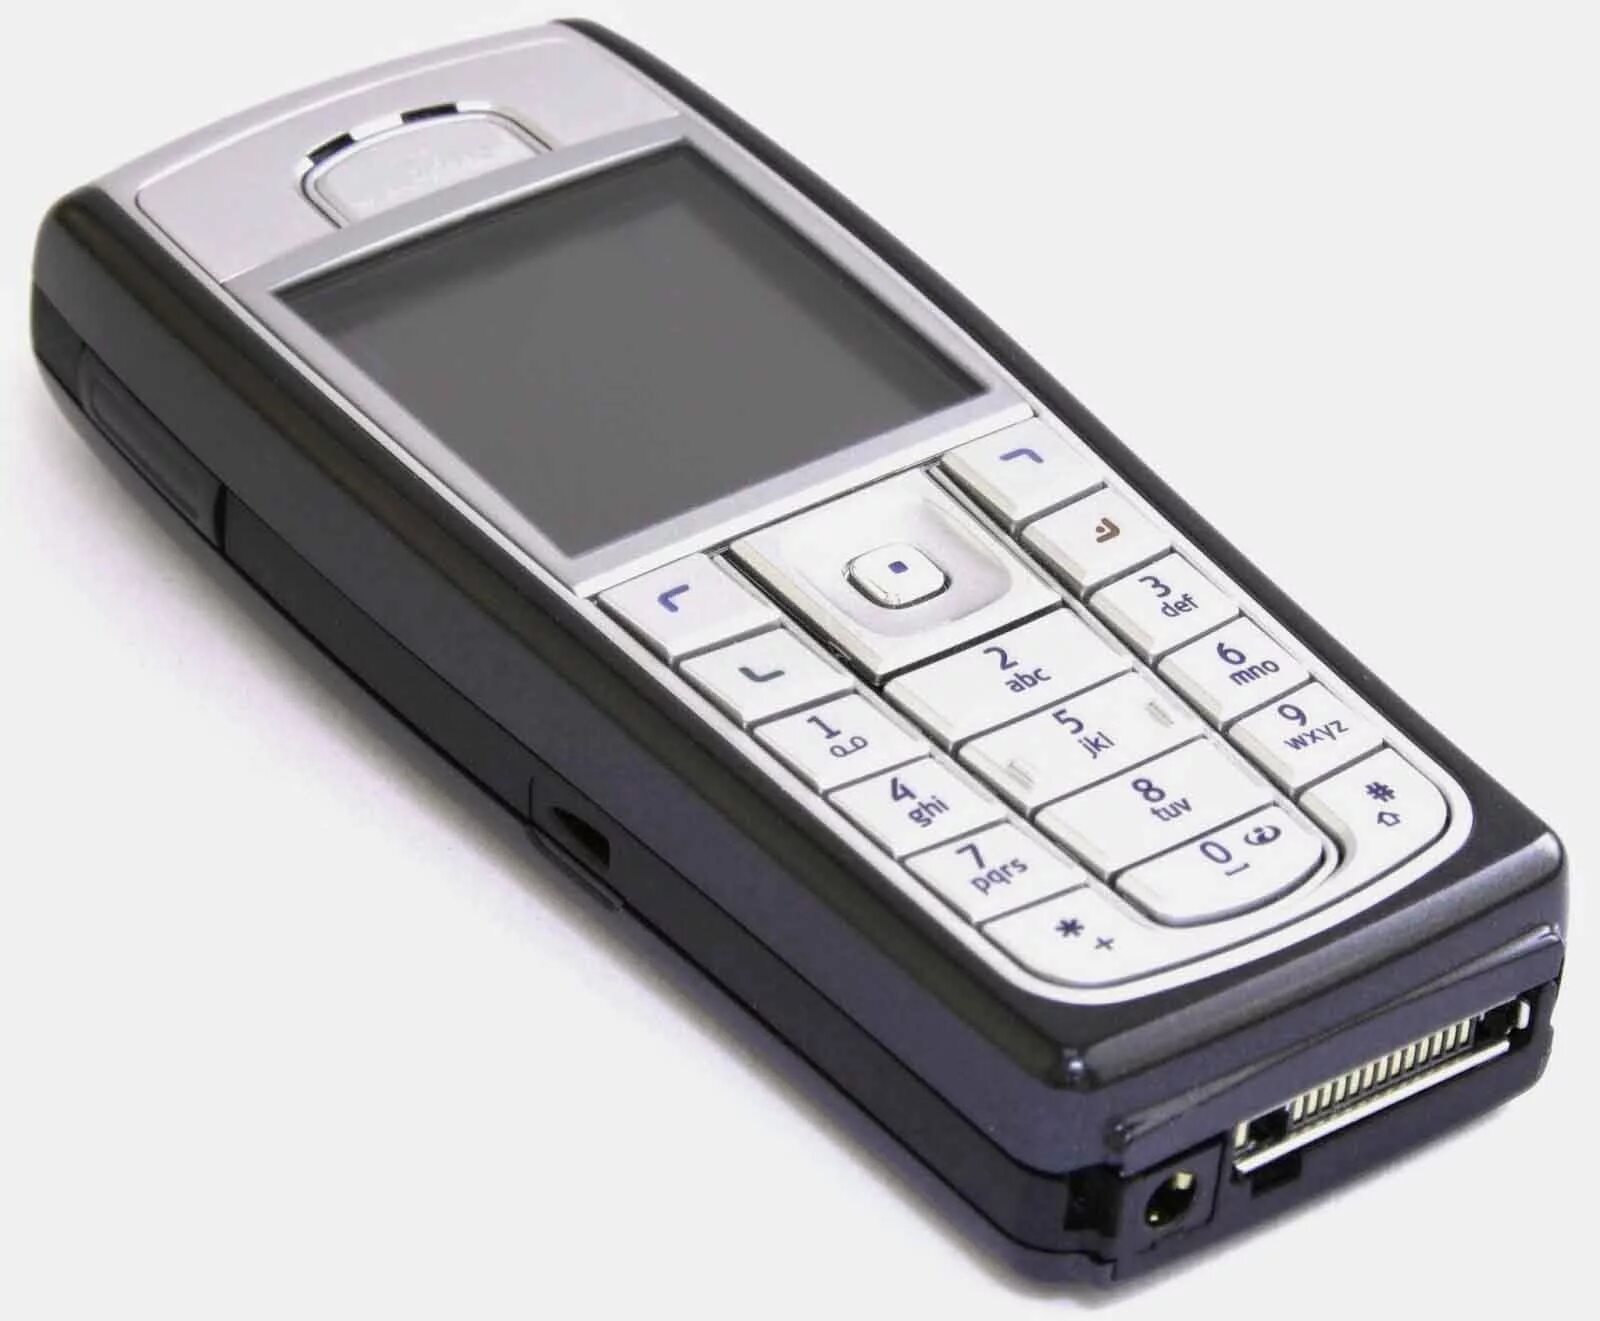 Картинка телефона нокиа. Нокиа 5150. Нокиа 6130. Сотовый телефон нокиа кнопочный старые модели. Nokia Старая модель 9800.